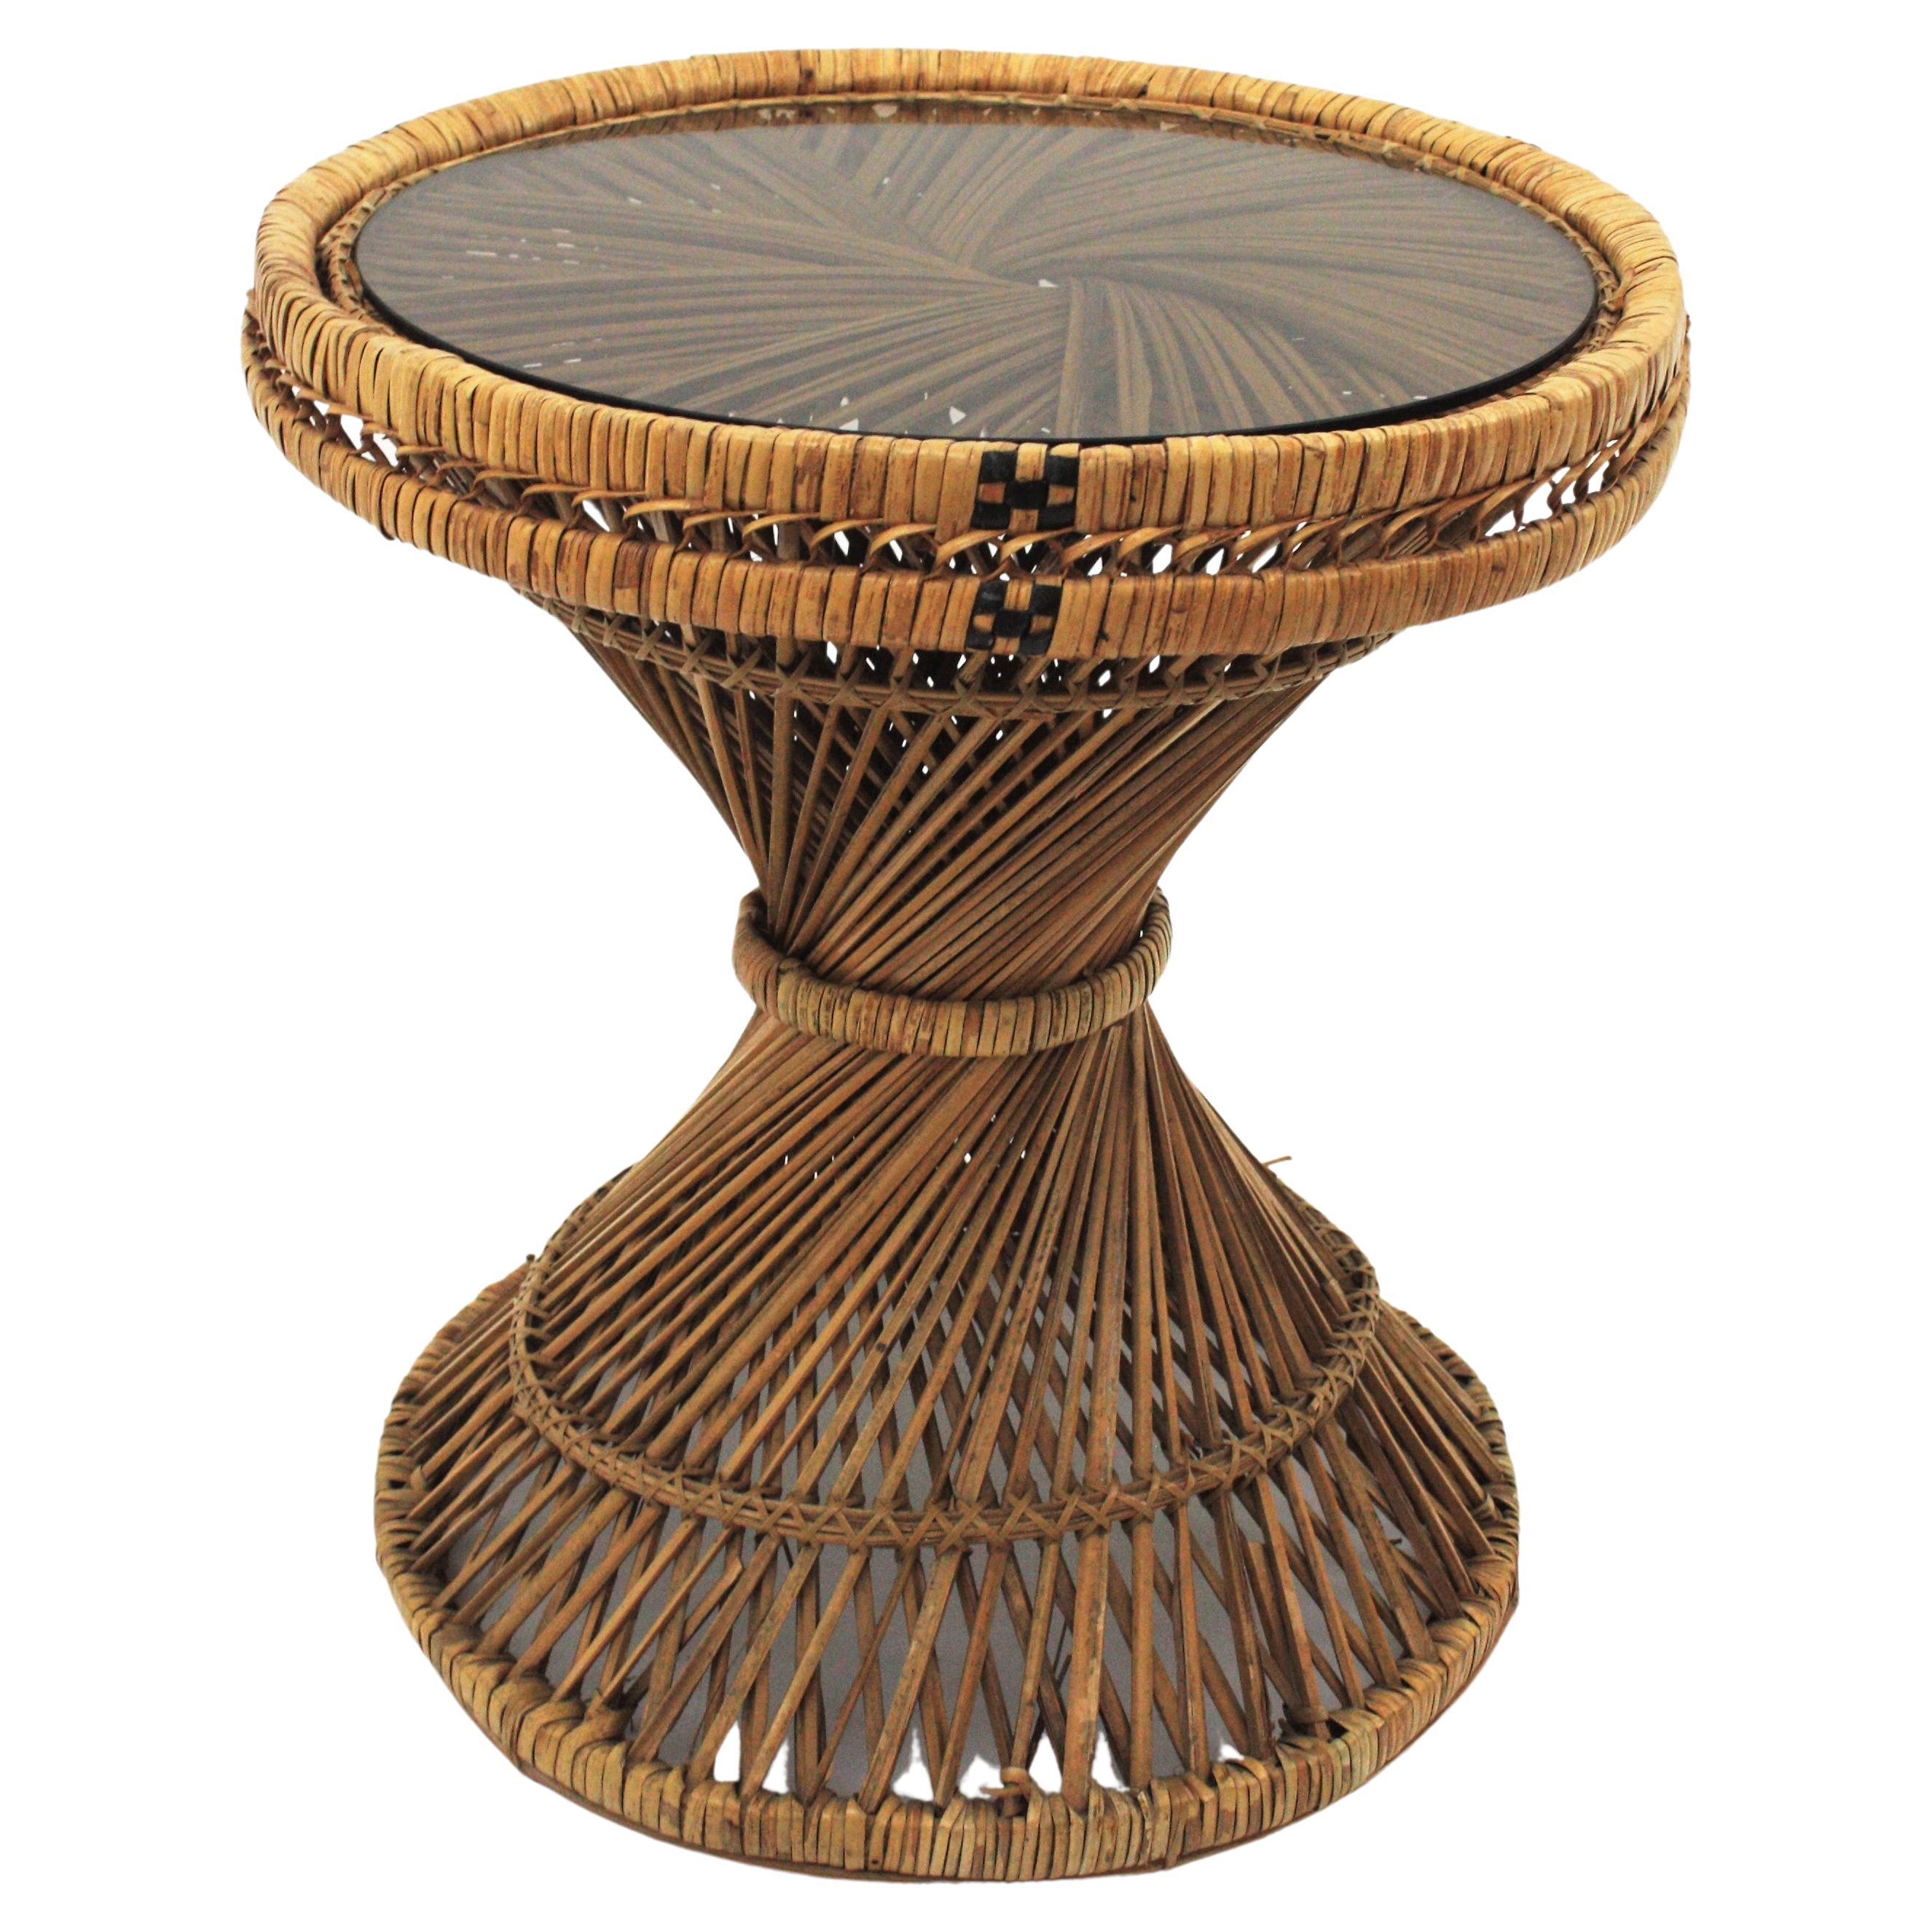 Runder Couchtisch aus Weidengeflecht und Rattan, handgefertigt nach dem Vorbild des Stuhls Emmanuelle, Spanien, 1960er Jahre.
Dieser schöne runde, niedrige Tisch besteht aus einem Geflecht aus Rattan und Weidenruten, das in der Mitte verdreht